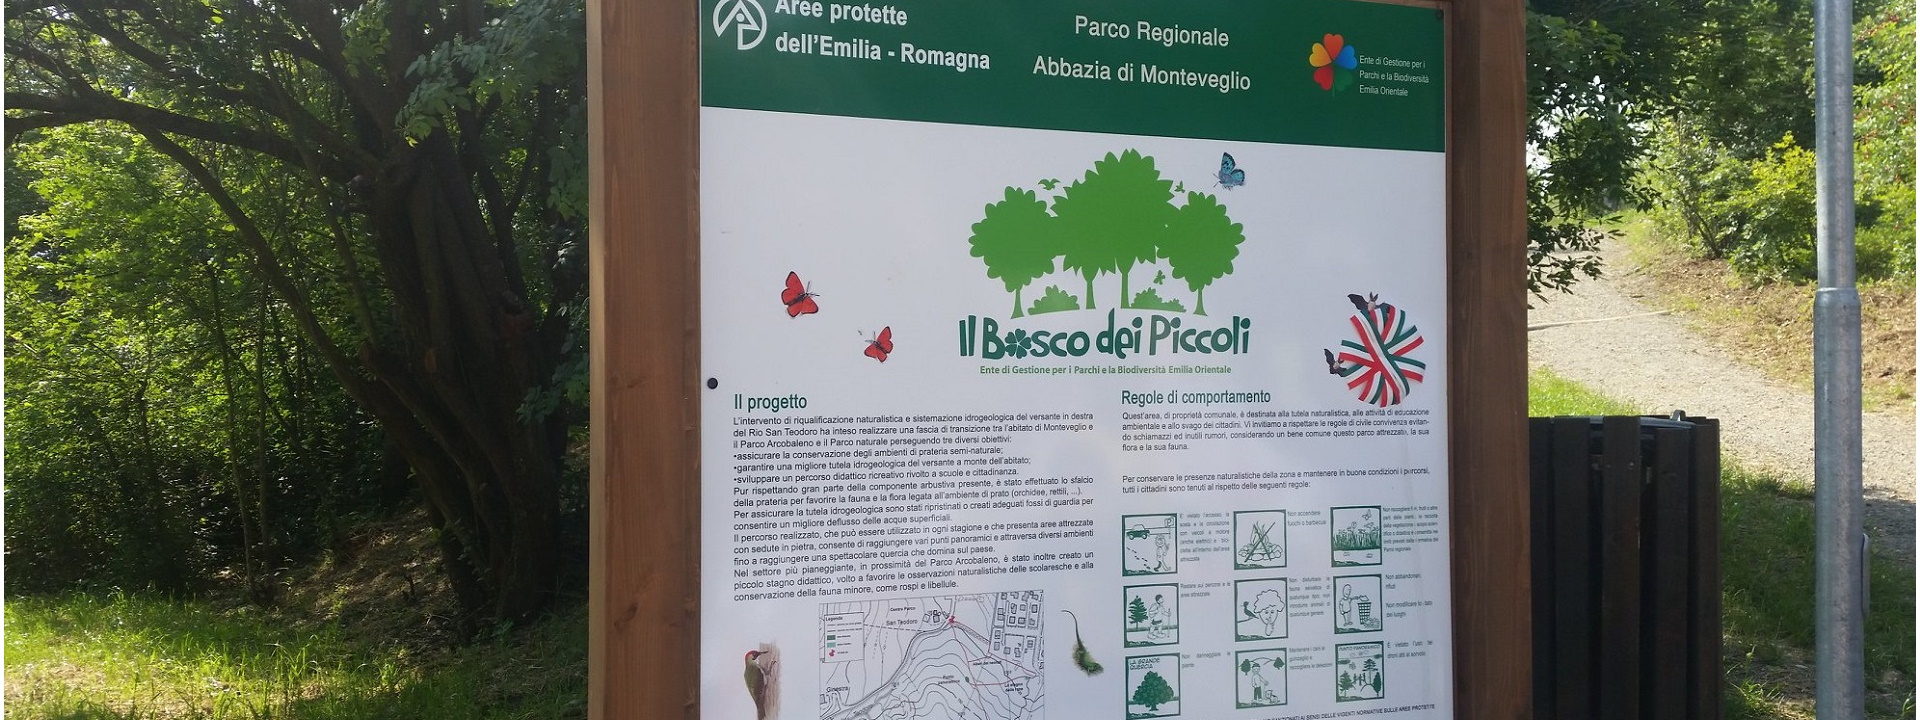 Bosco dei Piccoli